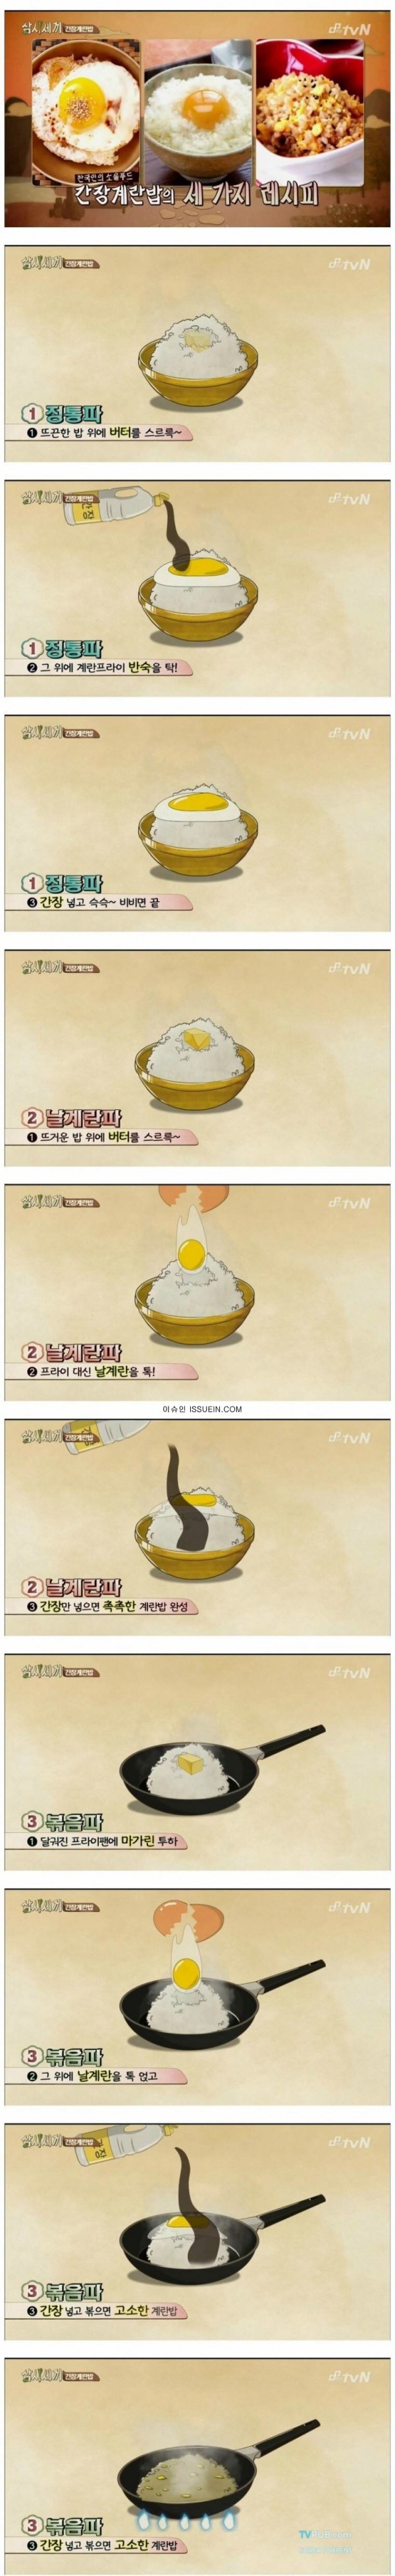 간장 계란밥 레시피